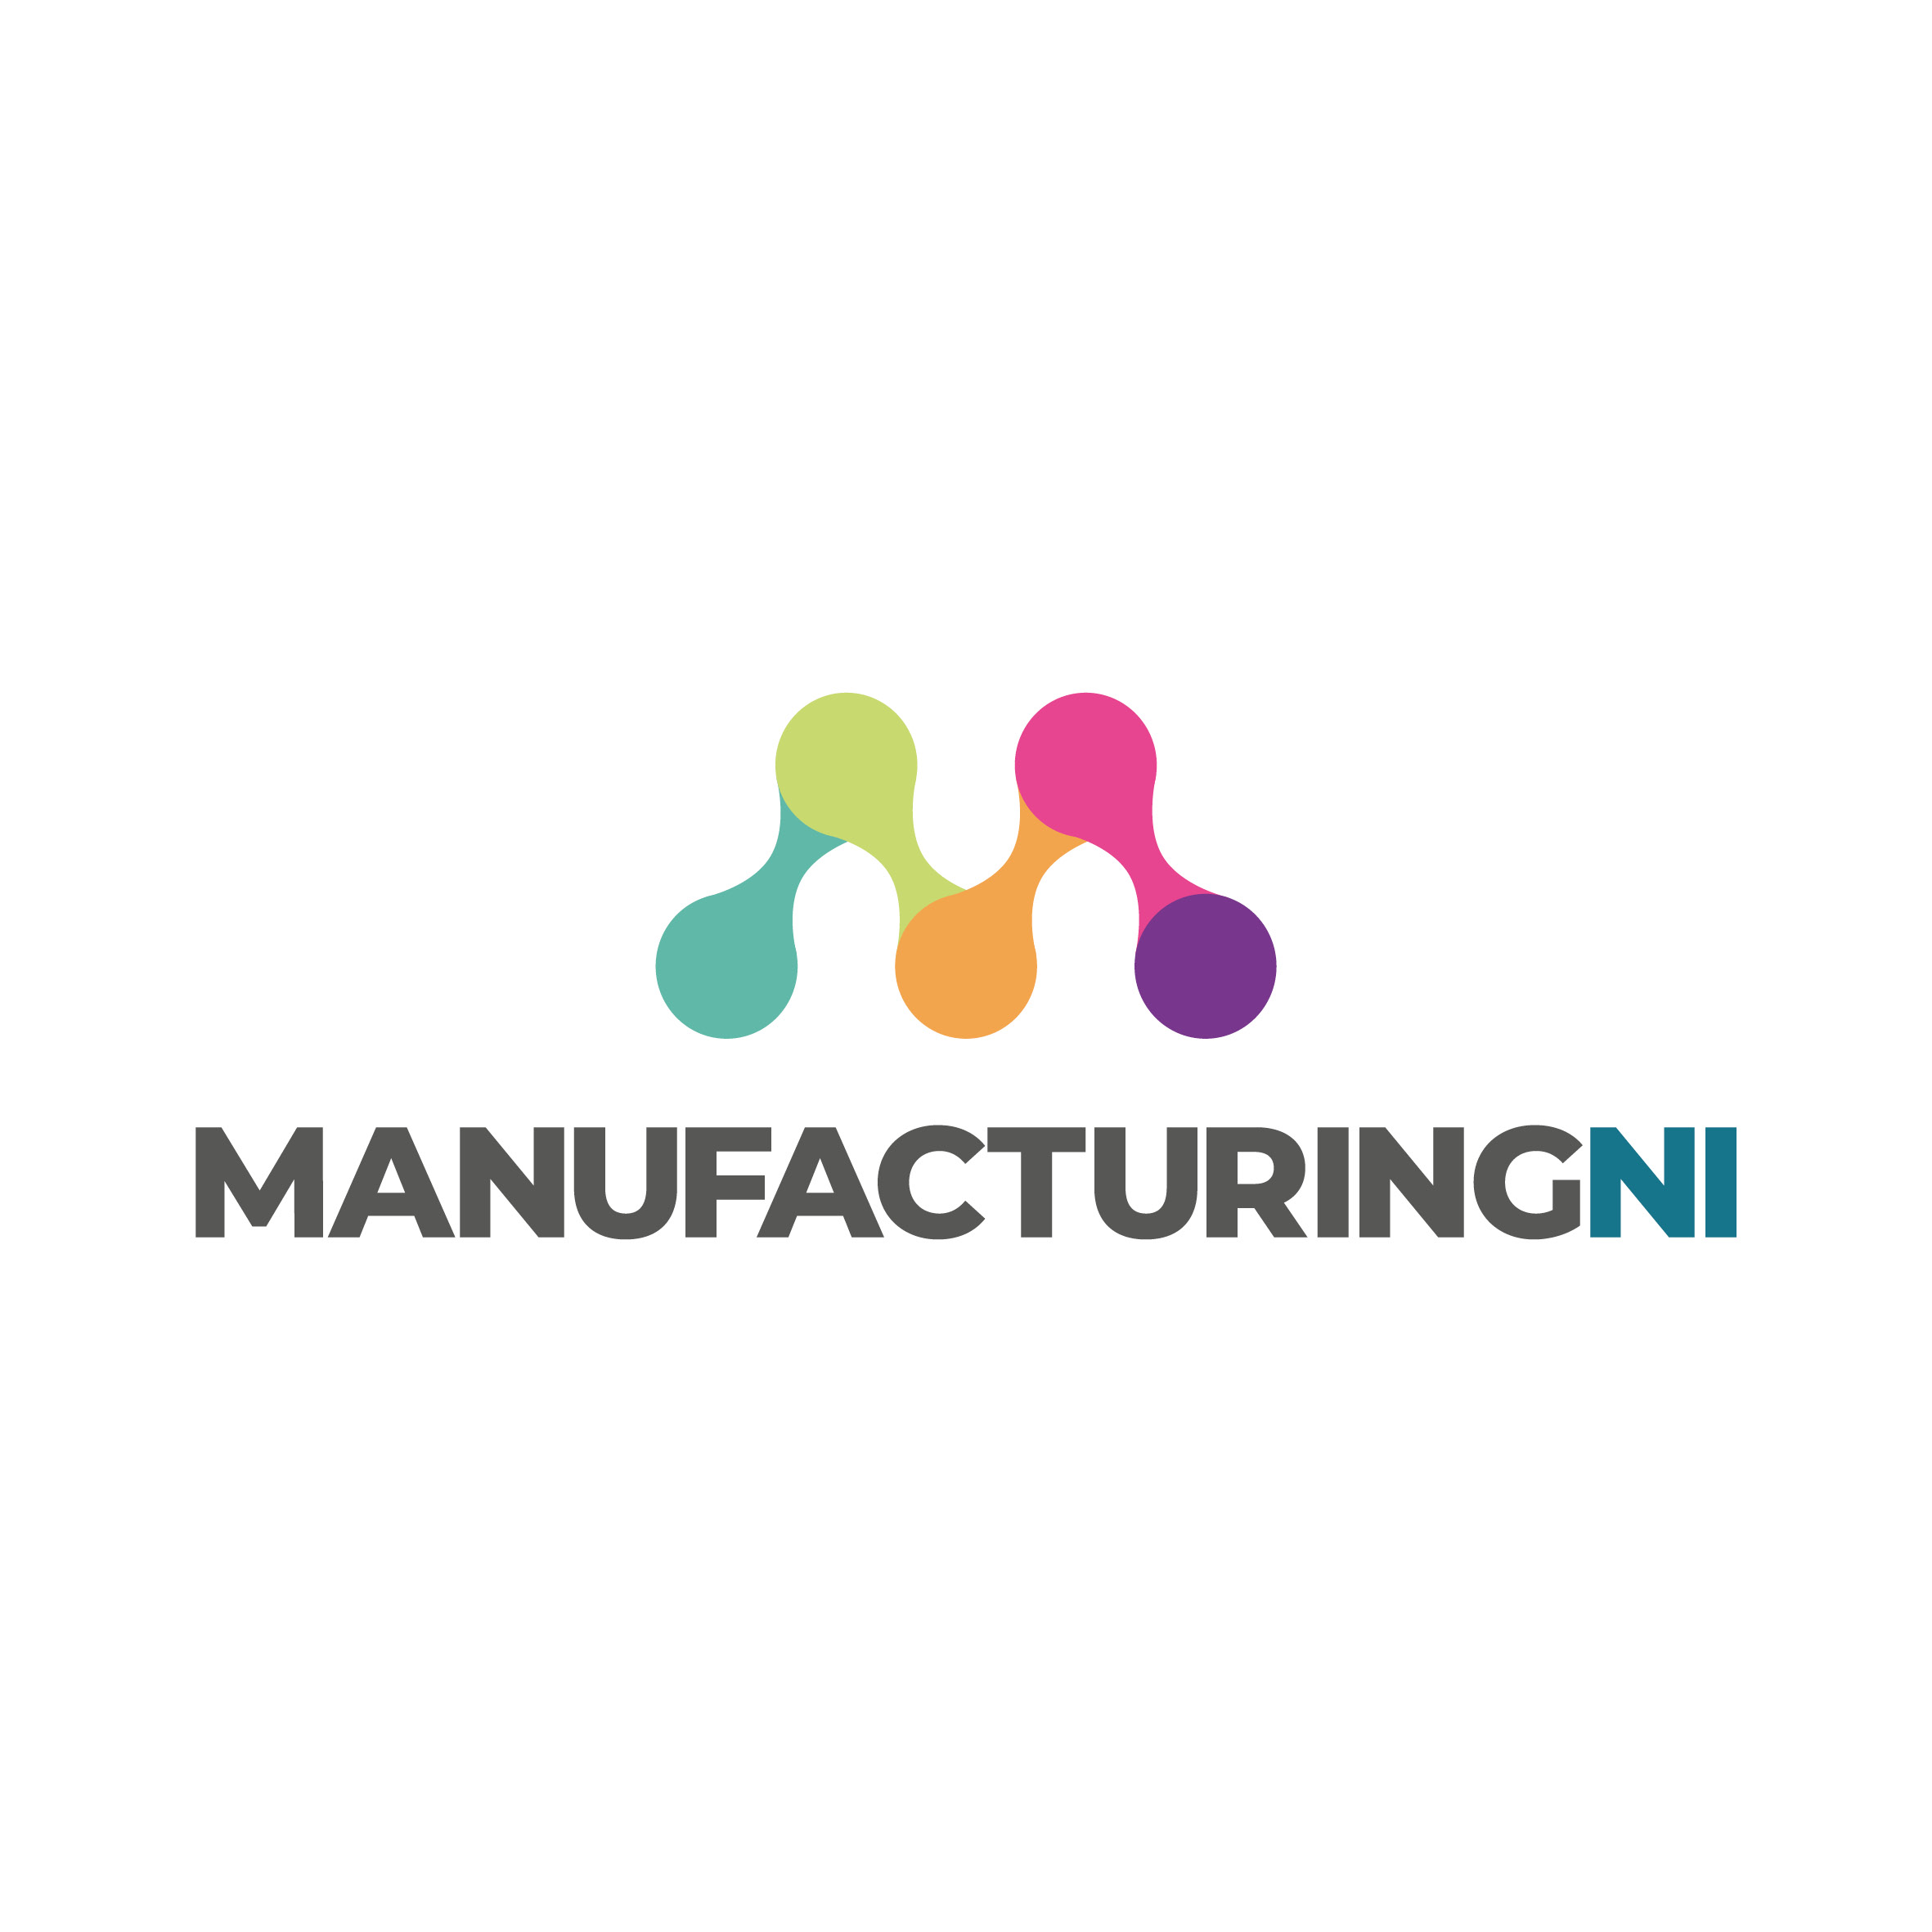 manufacturing NI logo